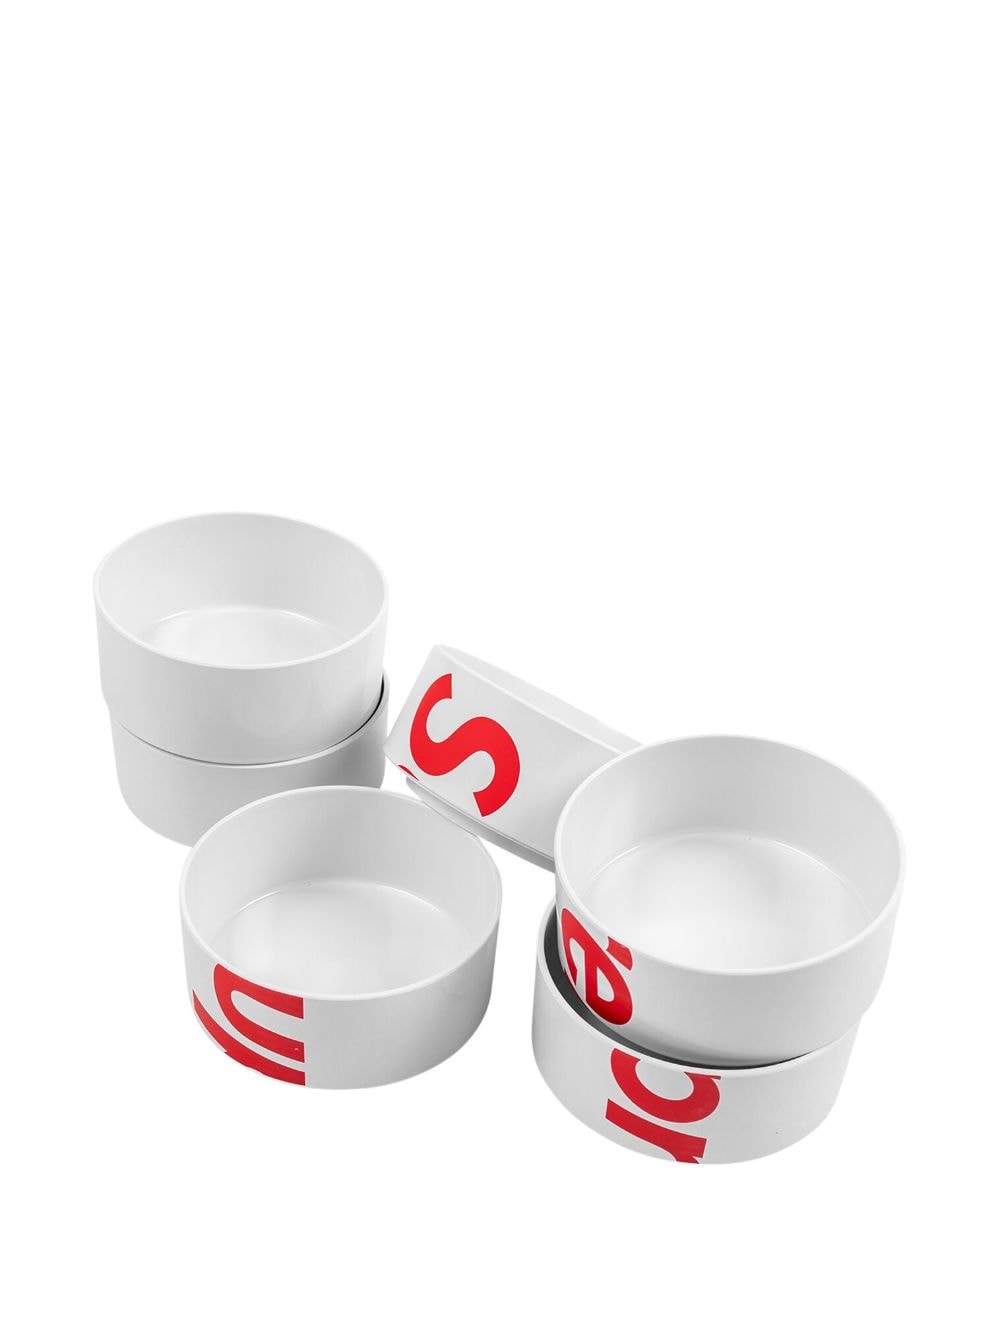 Supreme☆Heller Bowls(Set of 6)、白色、新品未開封品-